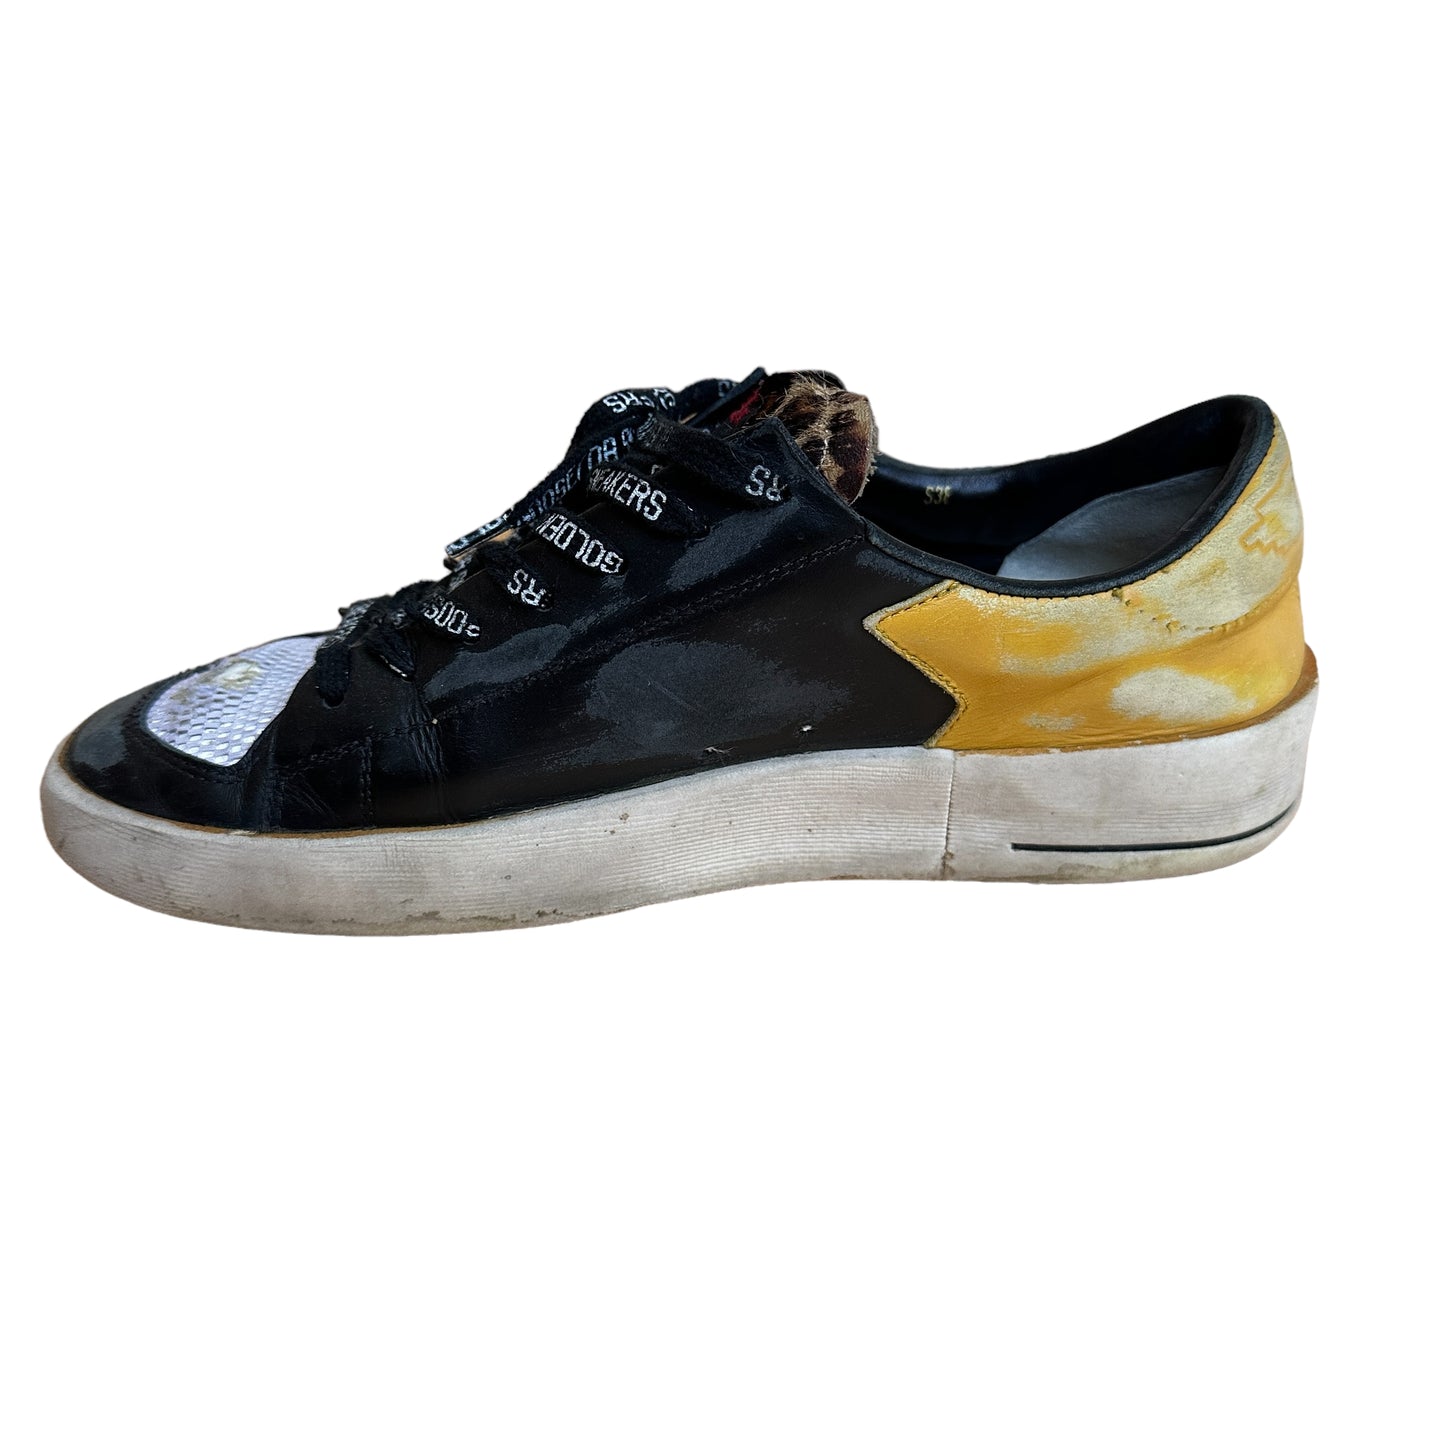 Black & Yellow Mesh Sneakers - 8